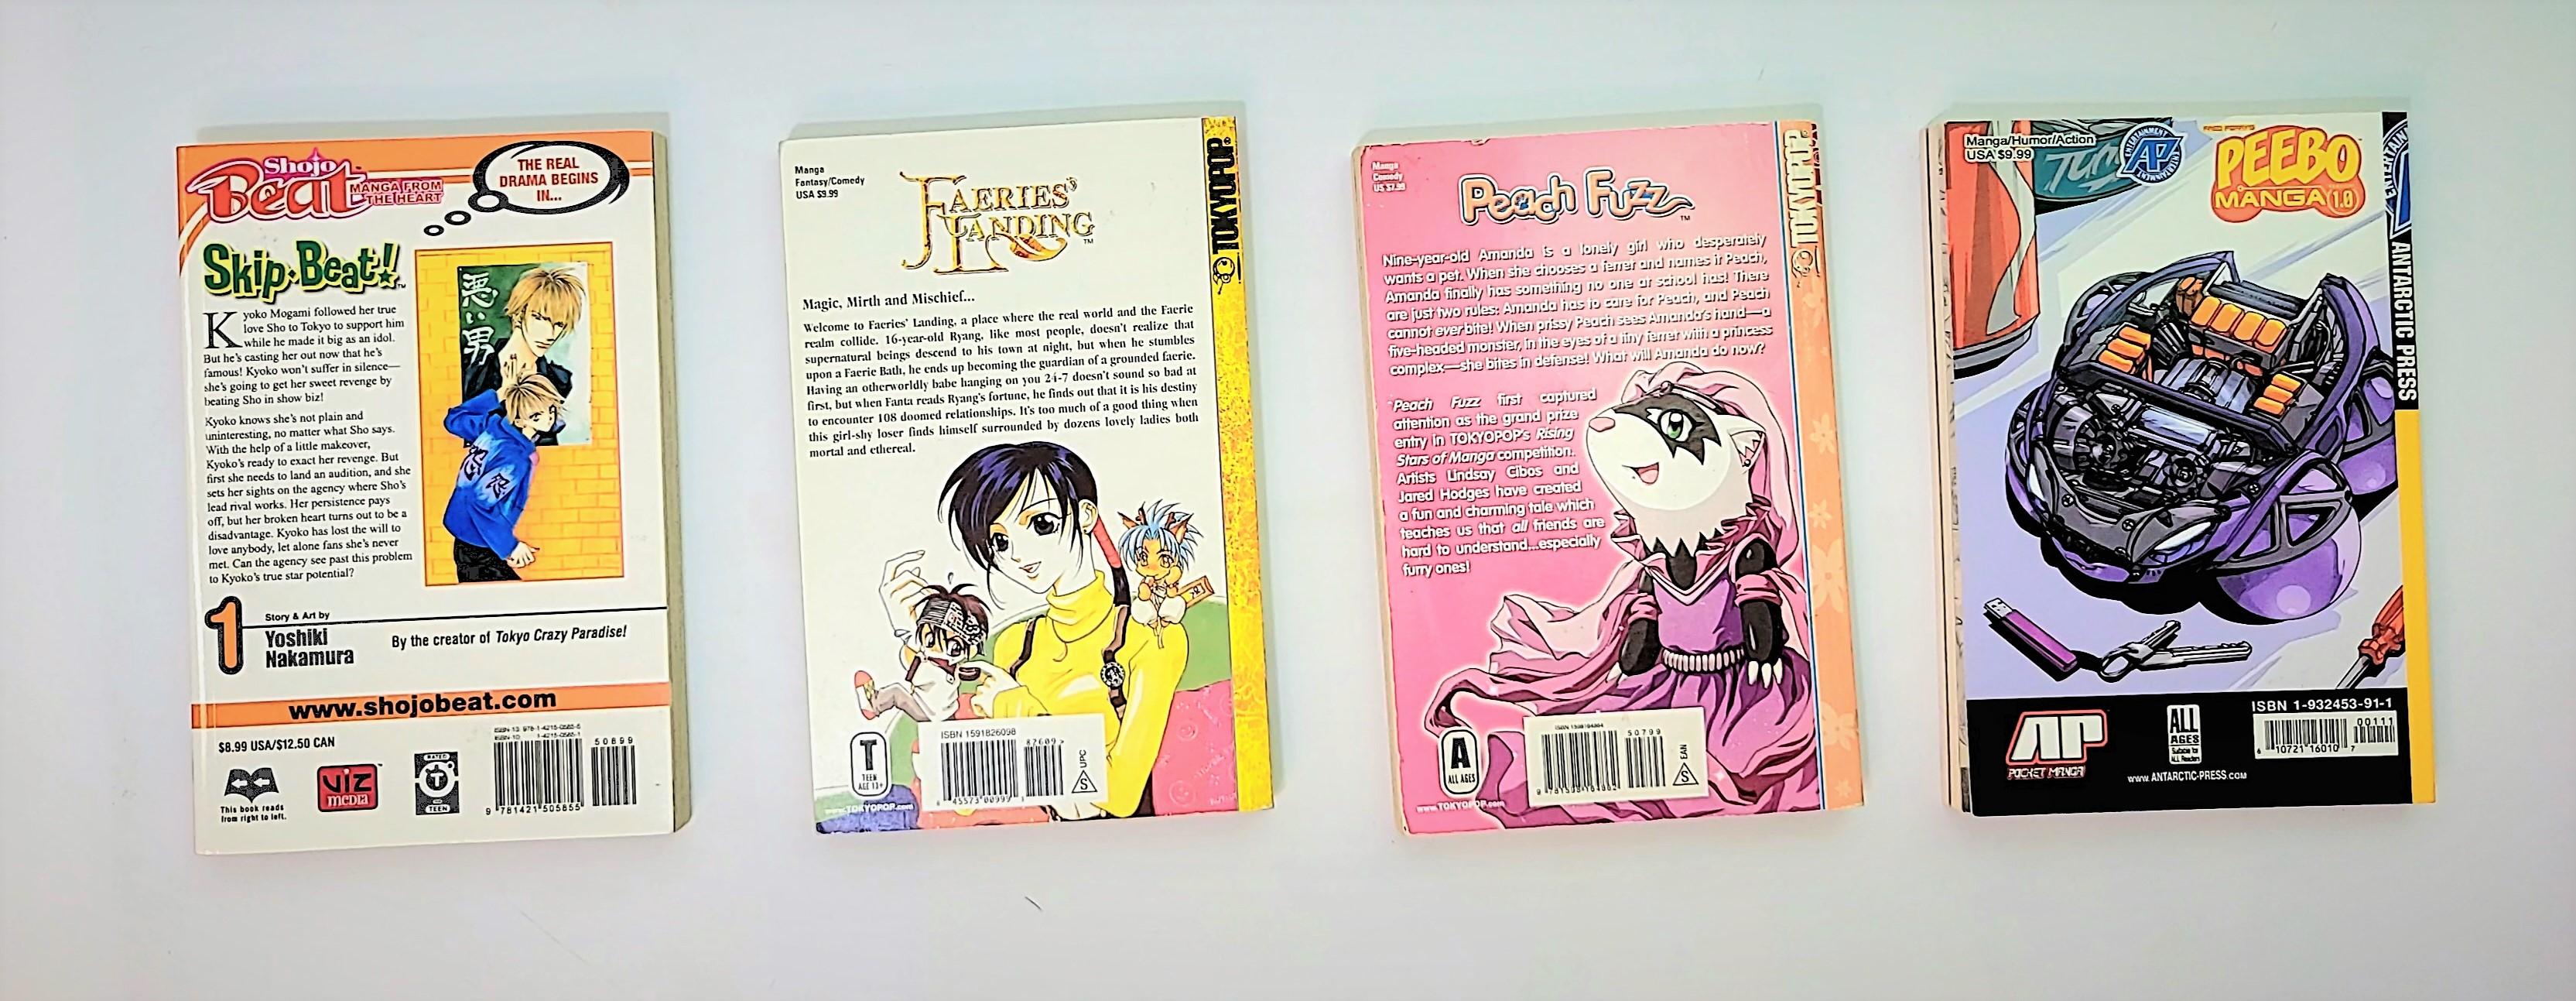 Manga / Graphic Novel Grouping